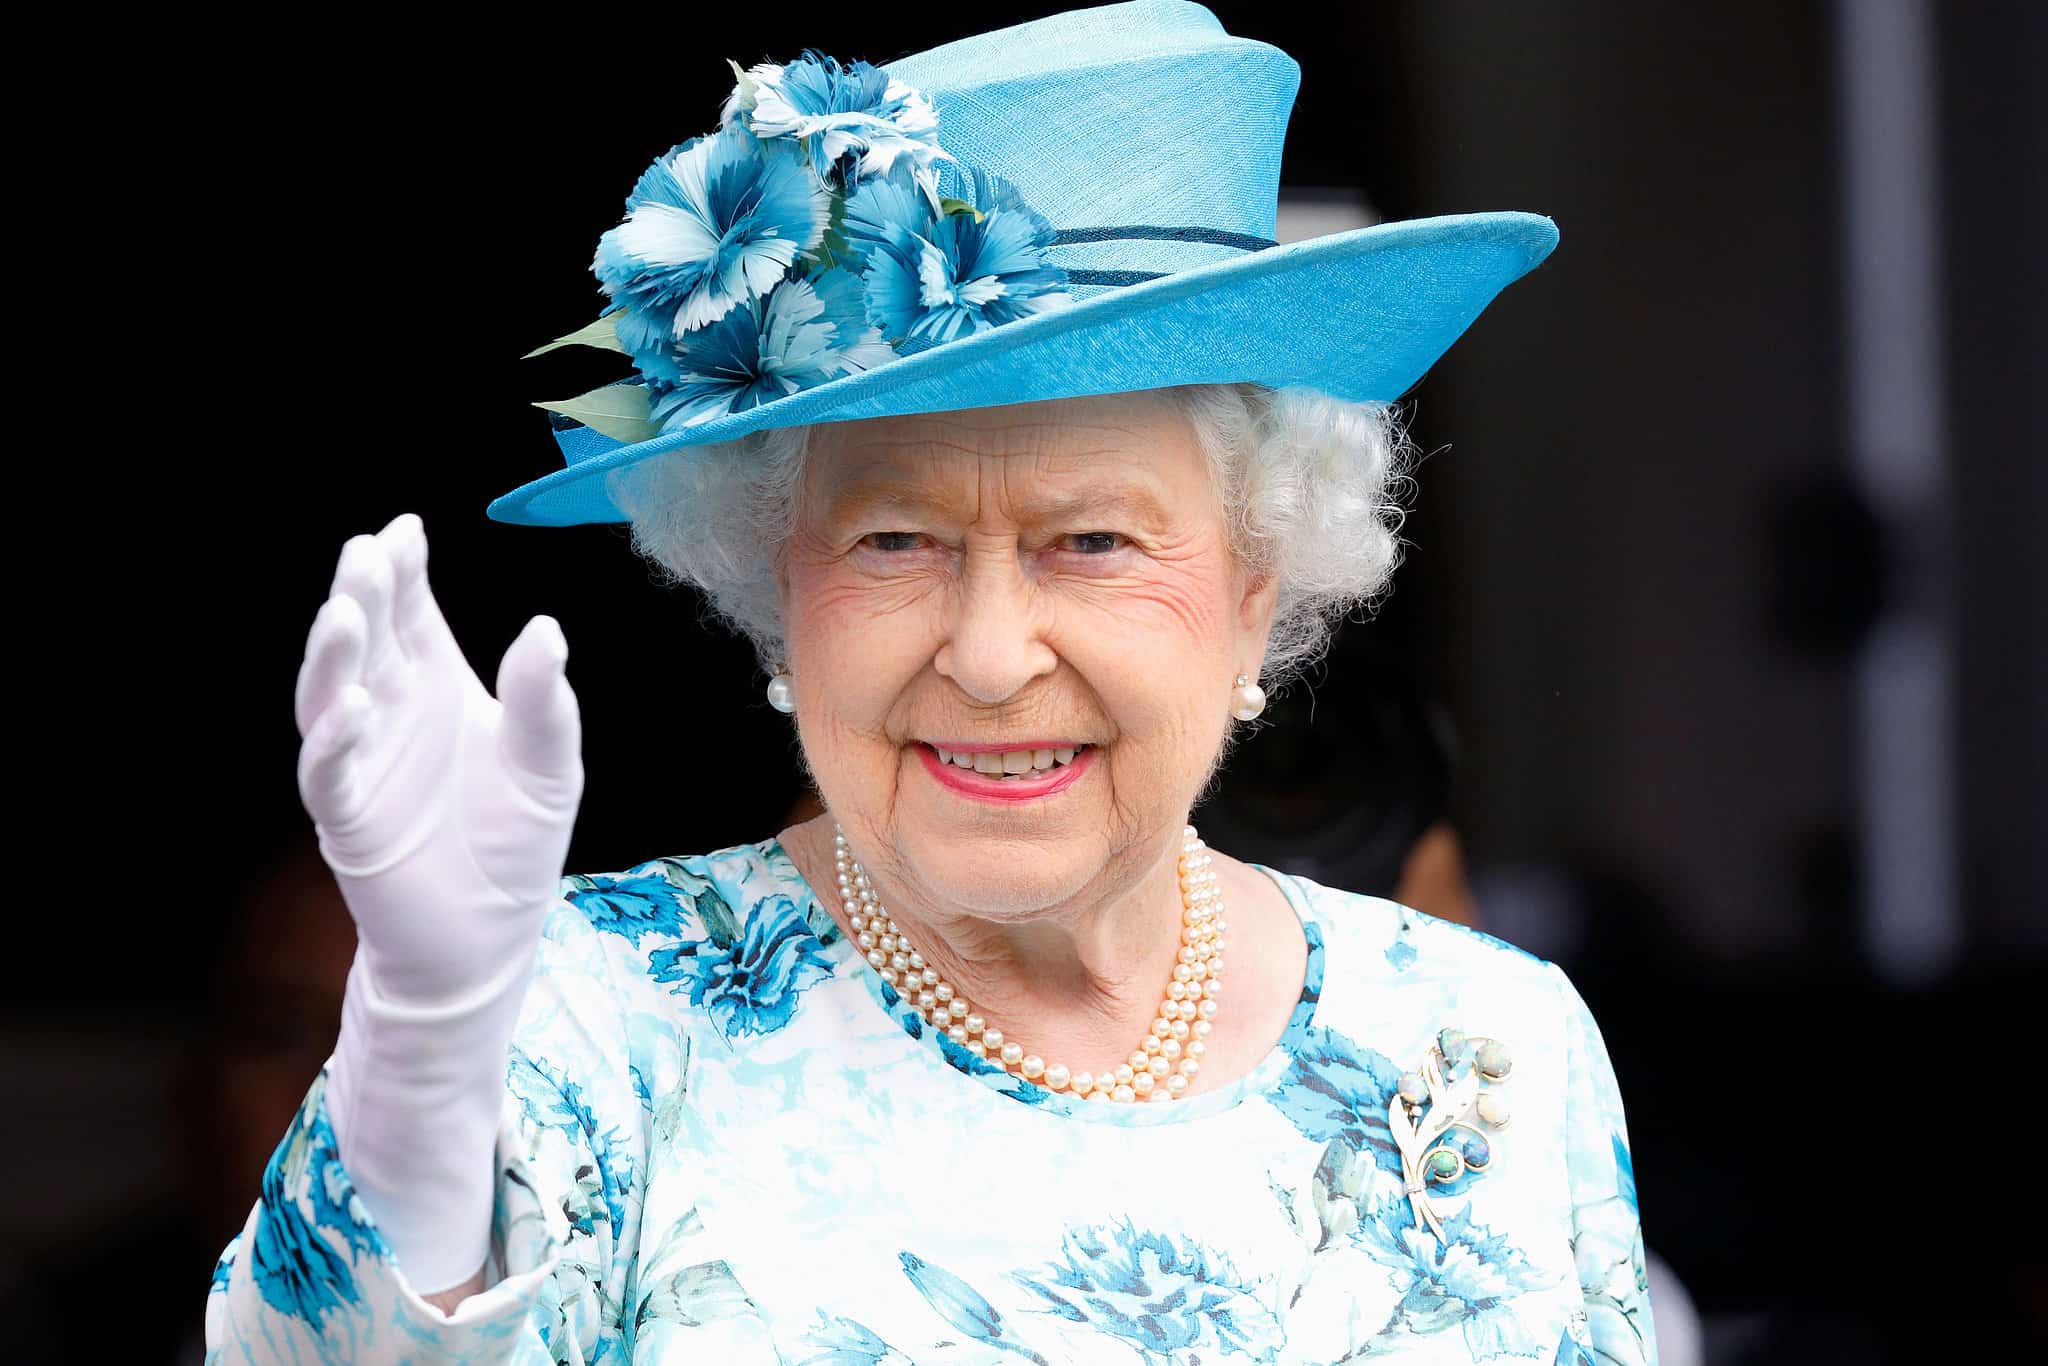 الملكة إليزابيث تطلب مديرا لحساب "تويتر".. تعرف على الشروط والراتب